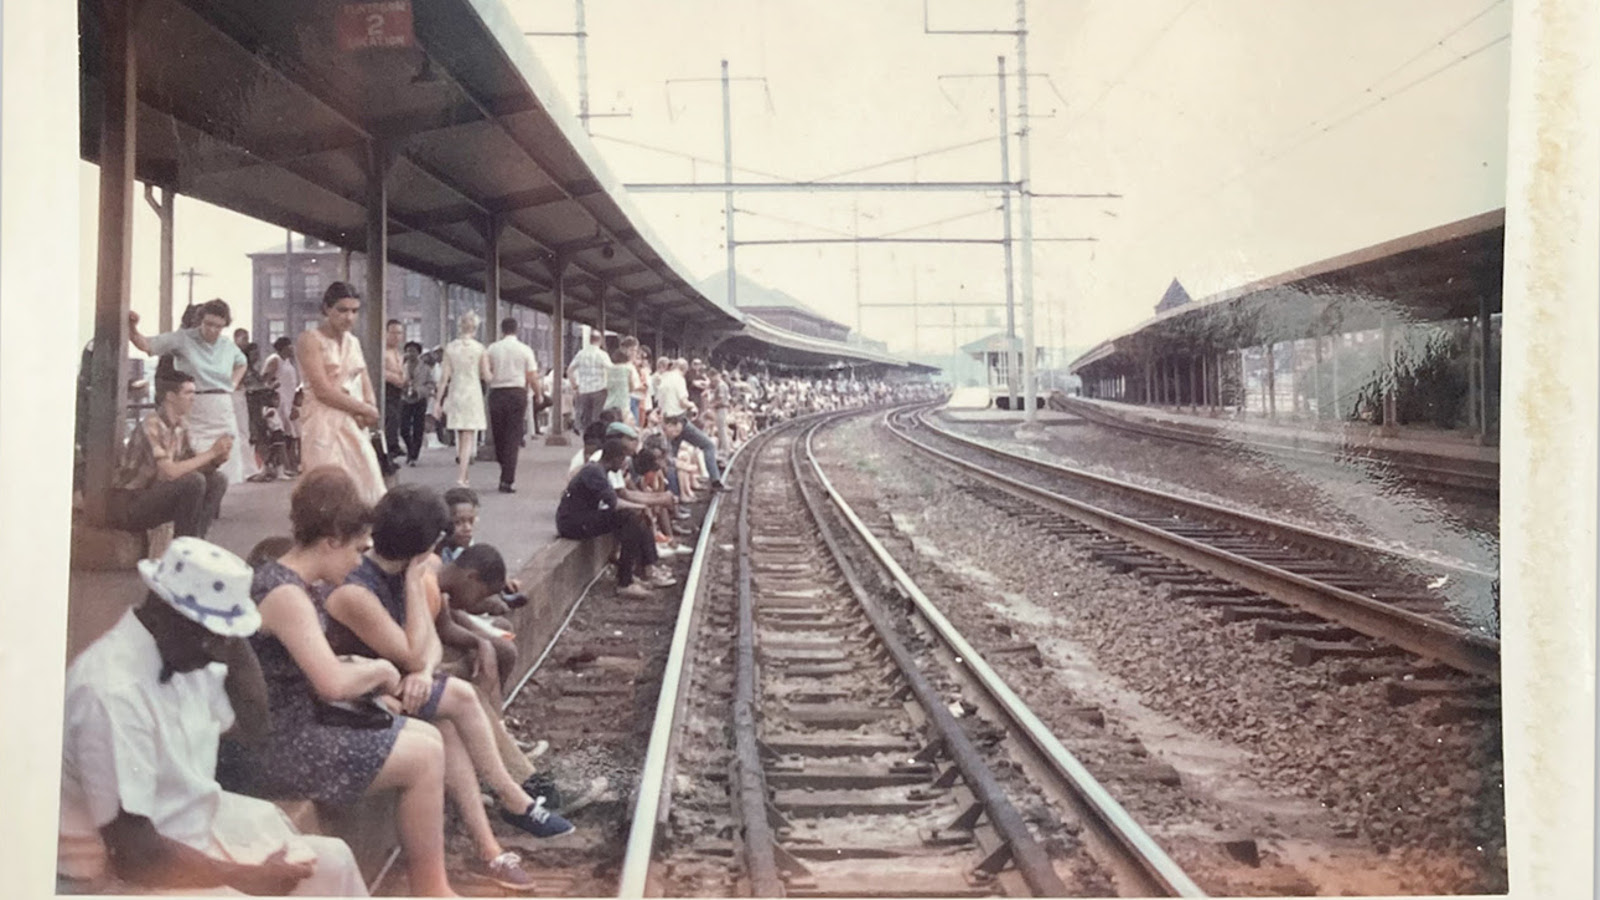 Kuvassa on ihmisiä istumassa ja seisomassa katoksen alla ja odottamassa junaa. Raiteet kaartuvat oikealle.